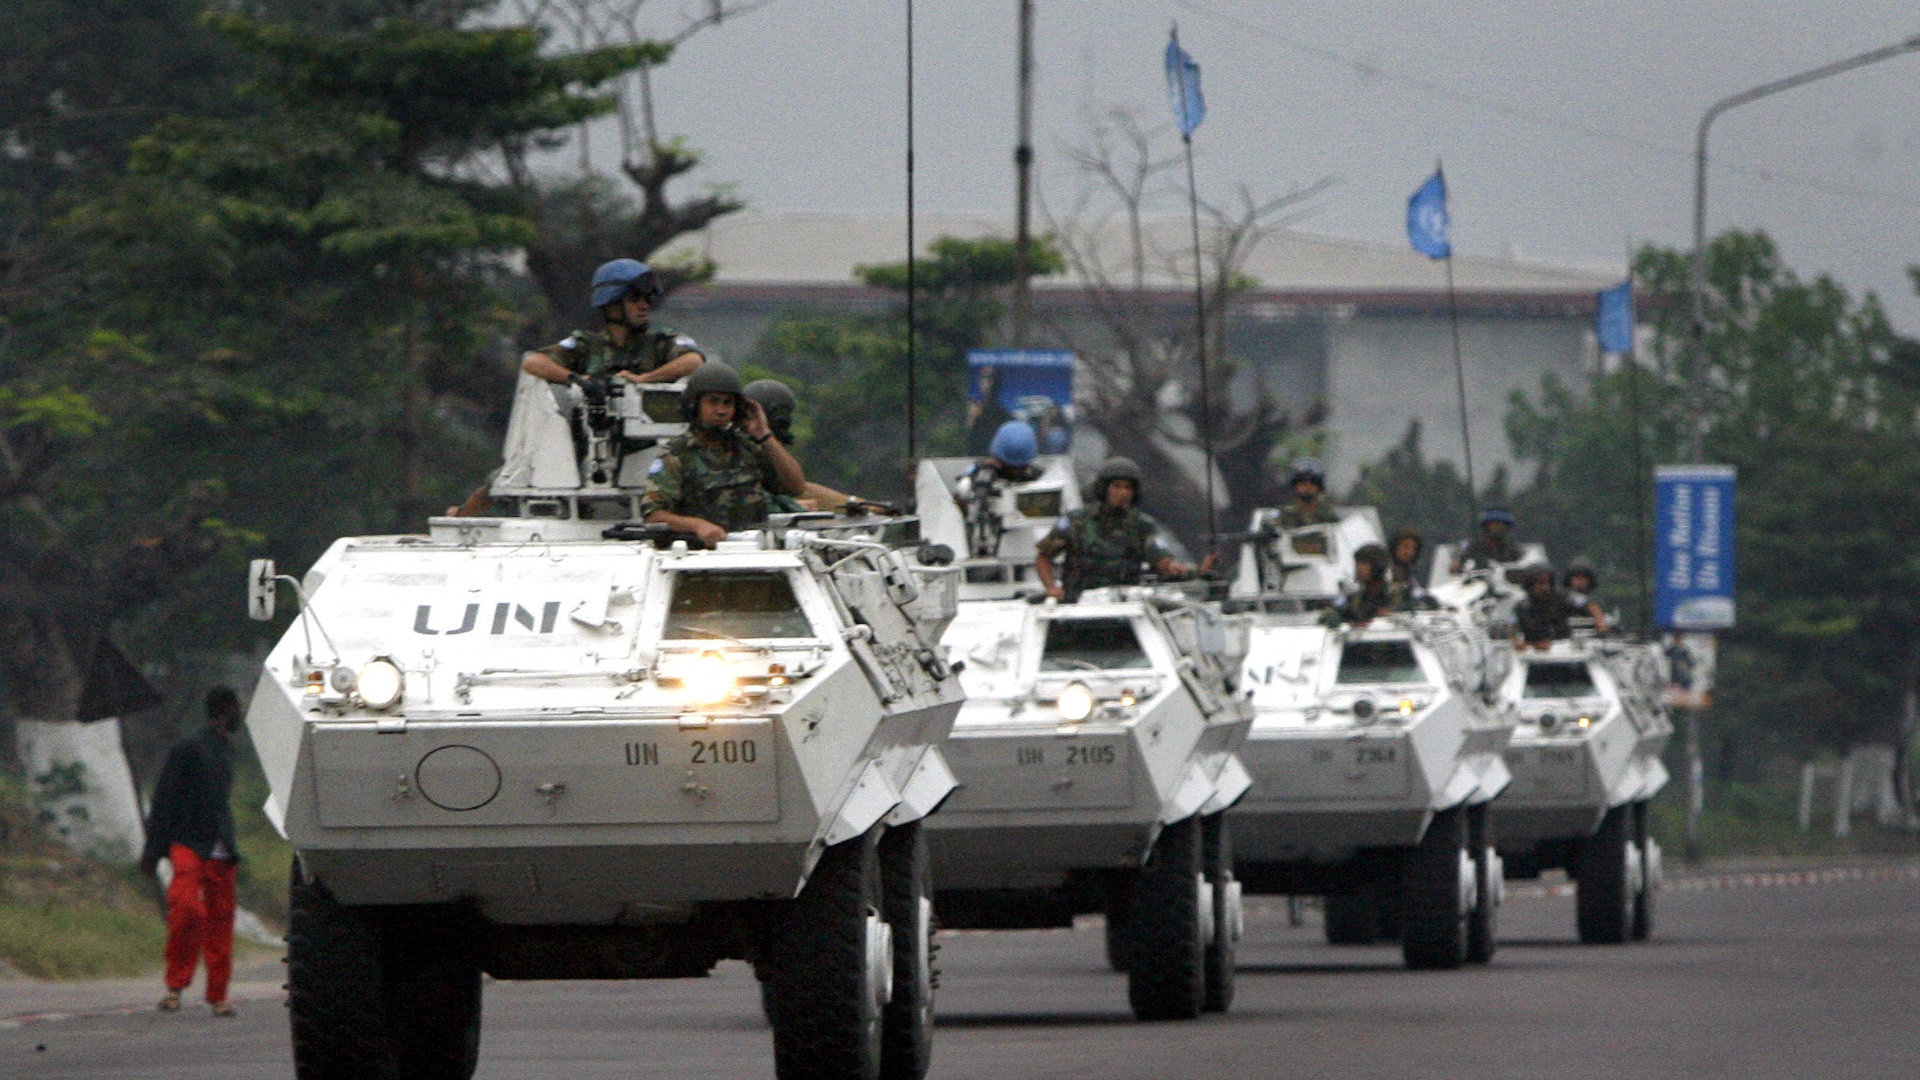 ДР Конго требует от представителя миссии ООН покинуть страну